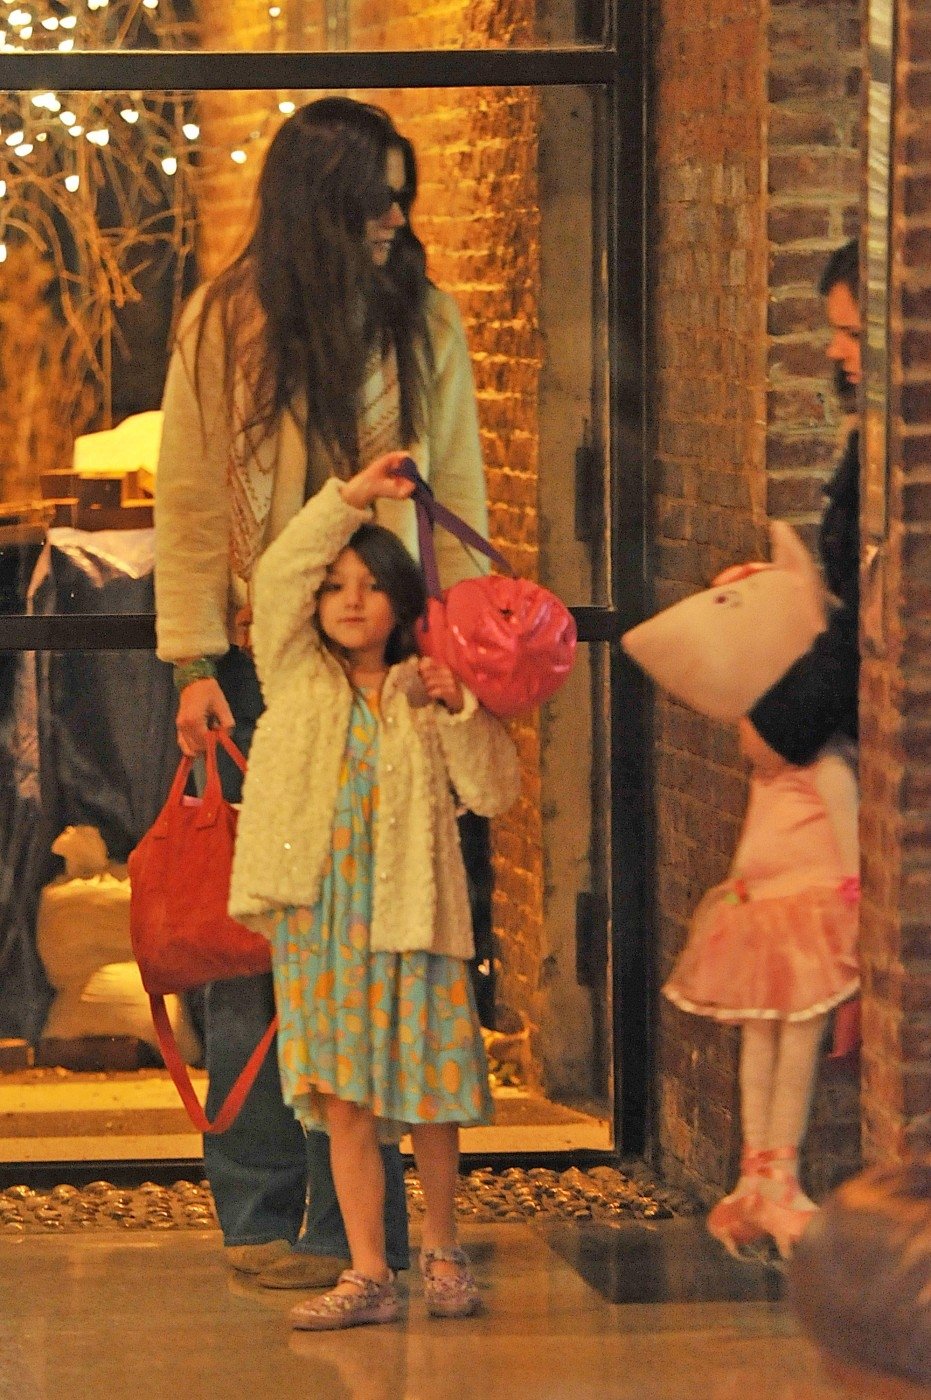 Katie Holmes, v doprovodu své dcery a její chůvy, vychází z rodinného apartmánu v centru New Yorku